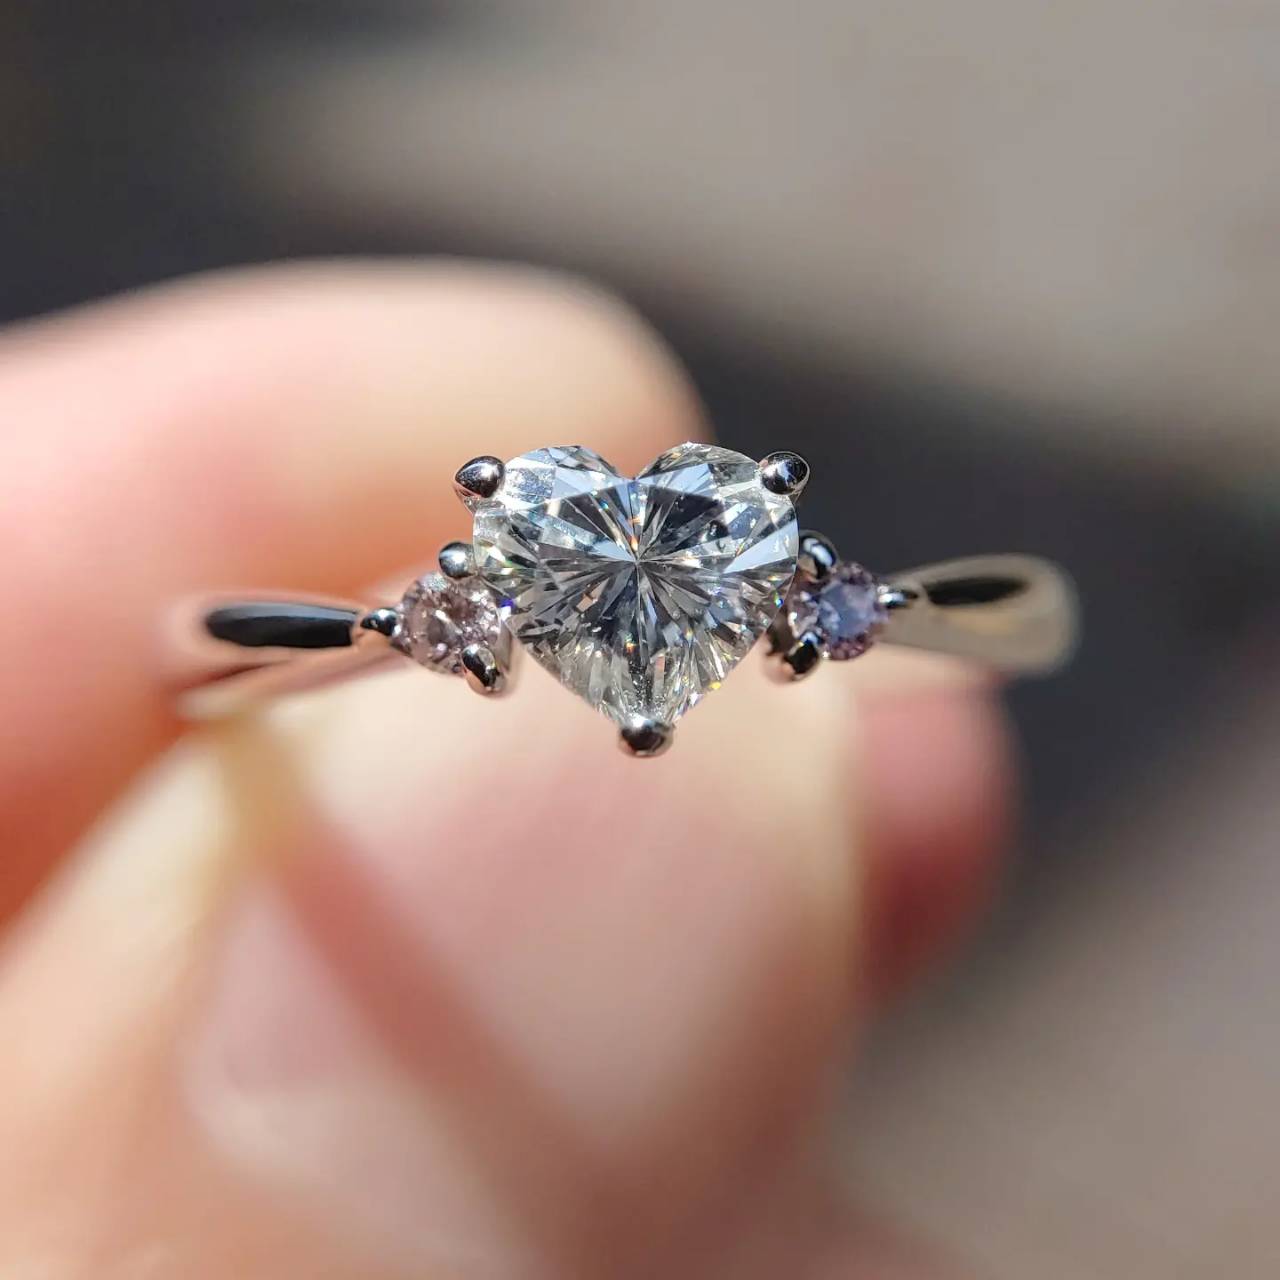 銀座で人気のハートダイヤモンドを使用したサイドピンクダイヤモンドのプラチナ婚約指輪